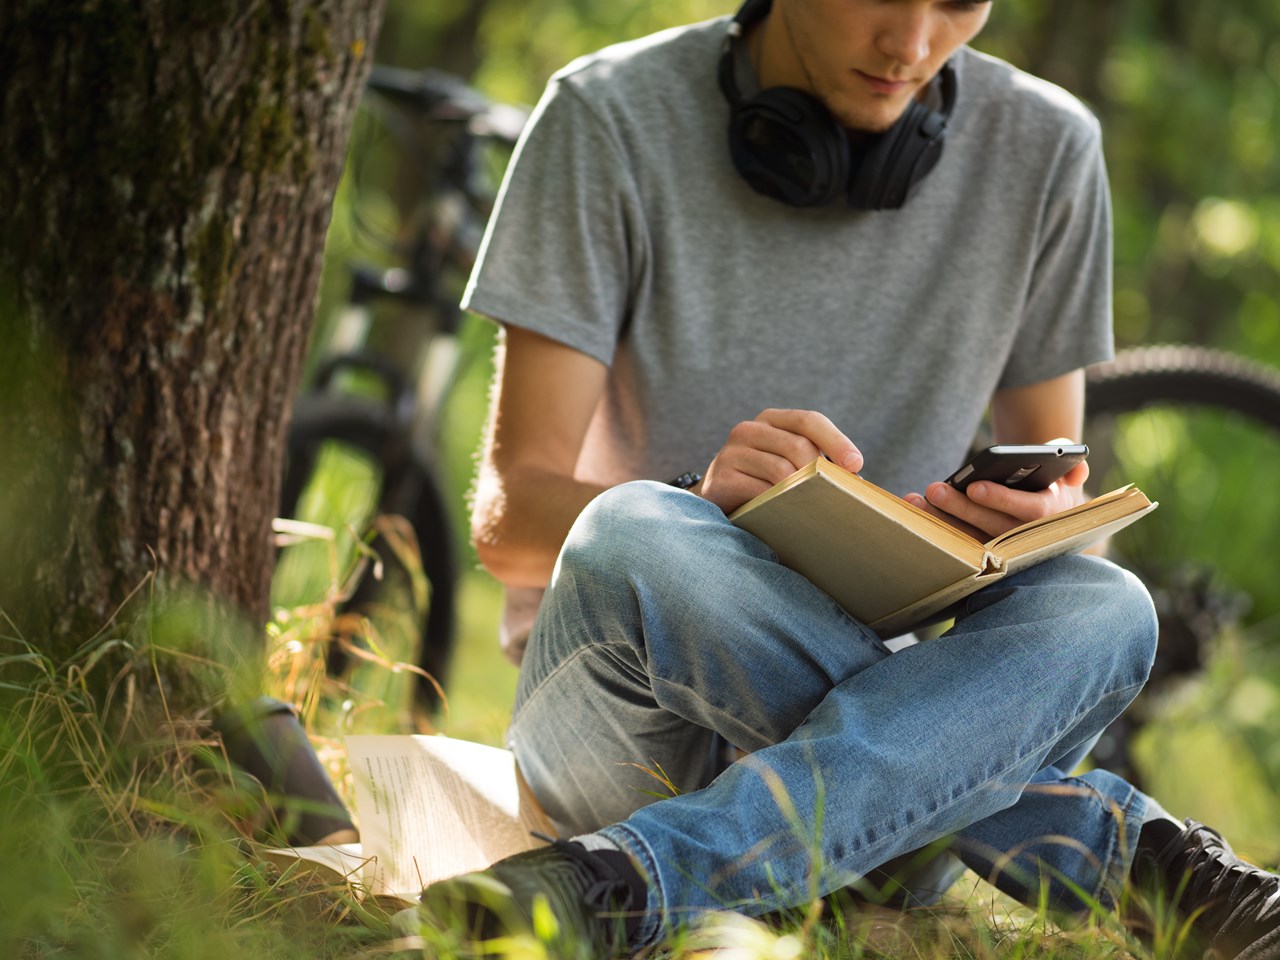 Kille som sitter utomhus i gräset vid ett träd med en mobil och en bok.